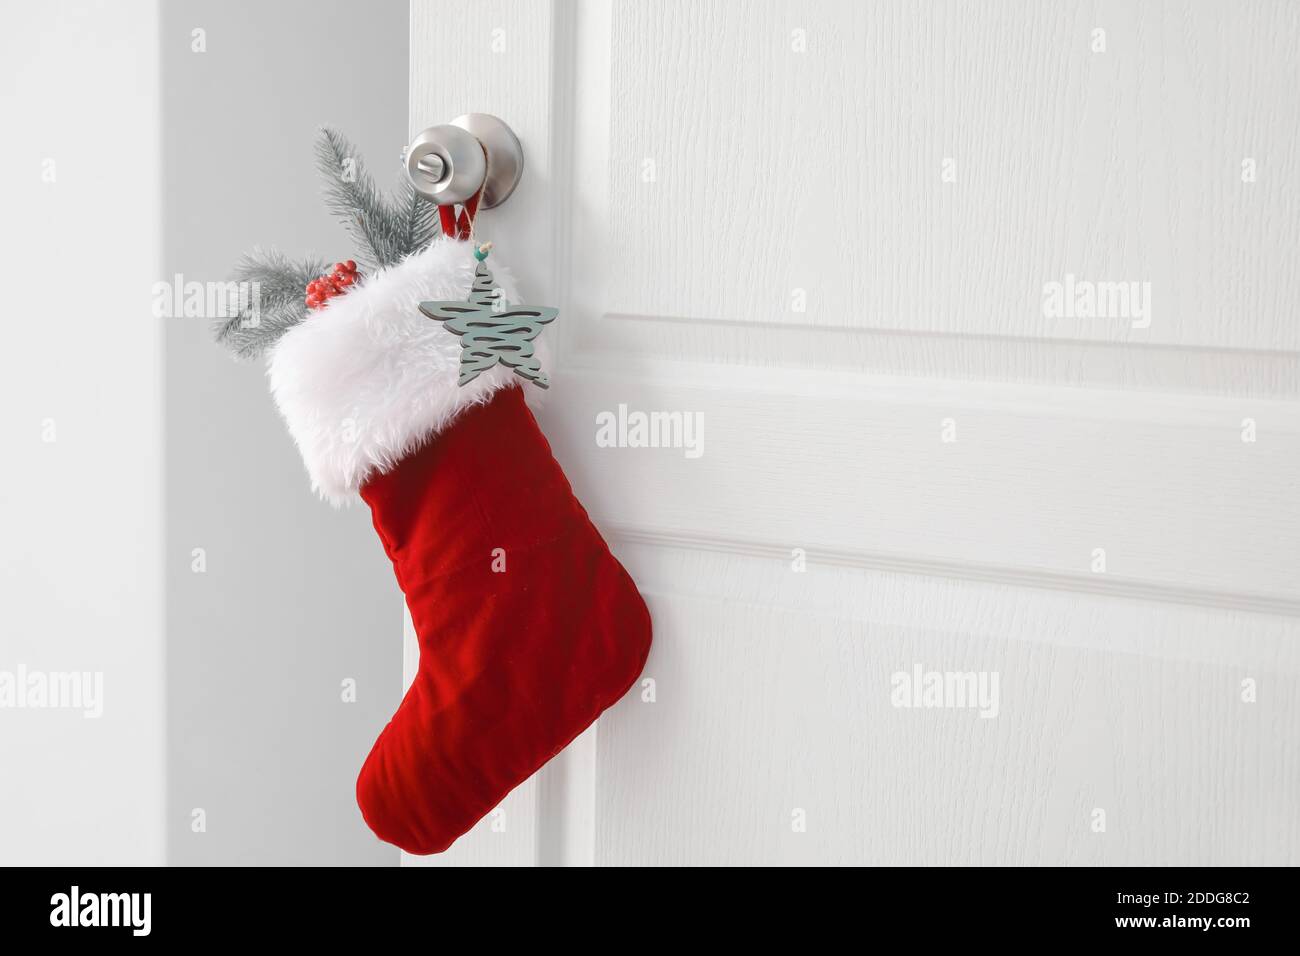 Beautiful Christmas sock hanging on white door Stock Photo - Alamy